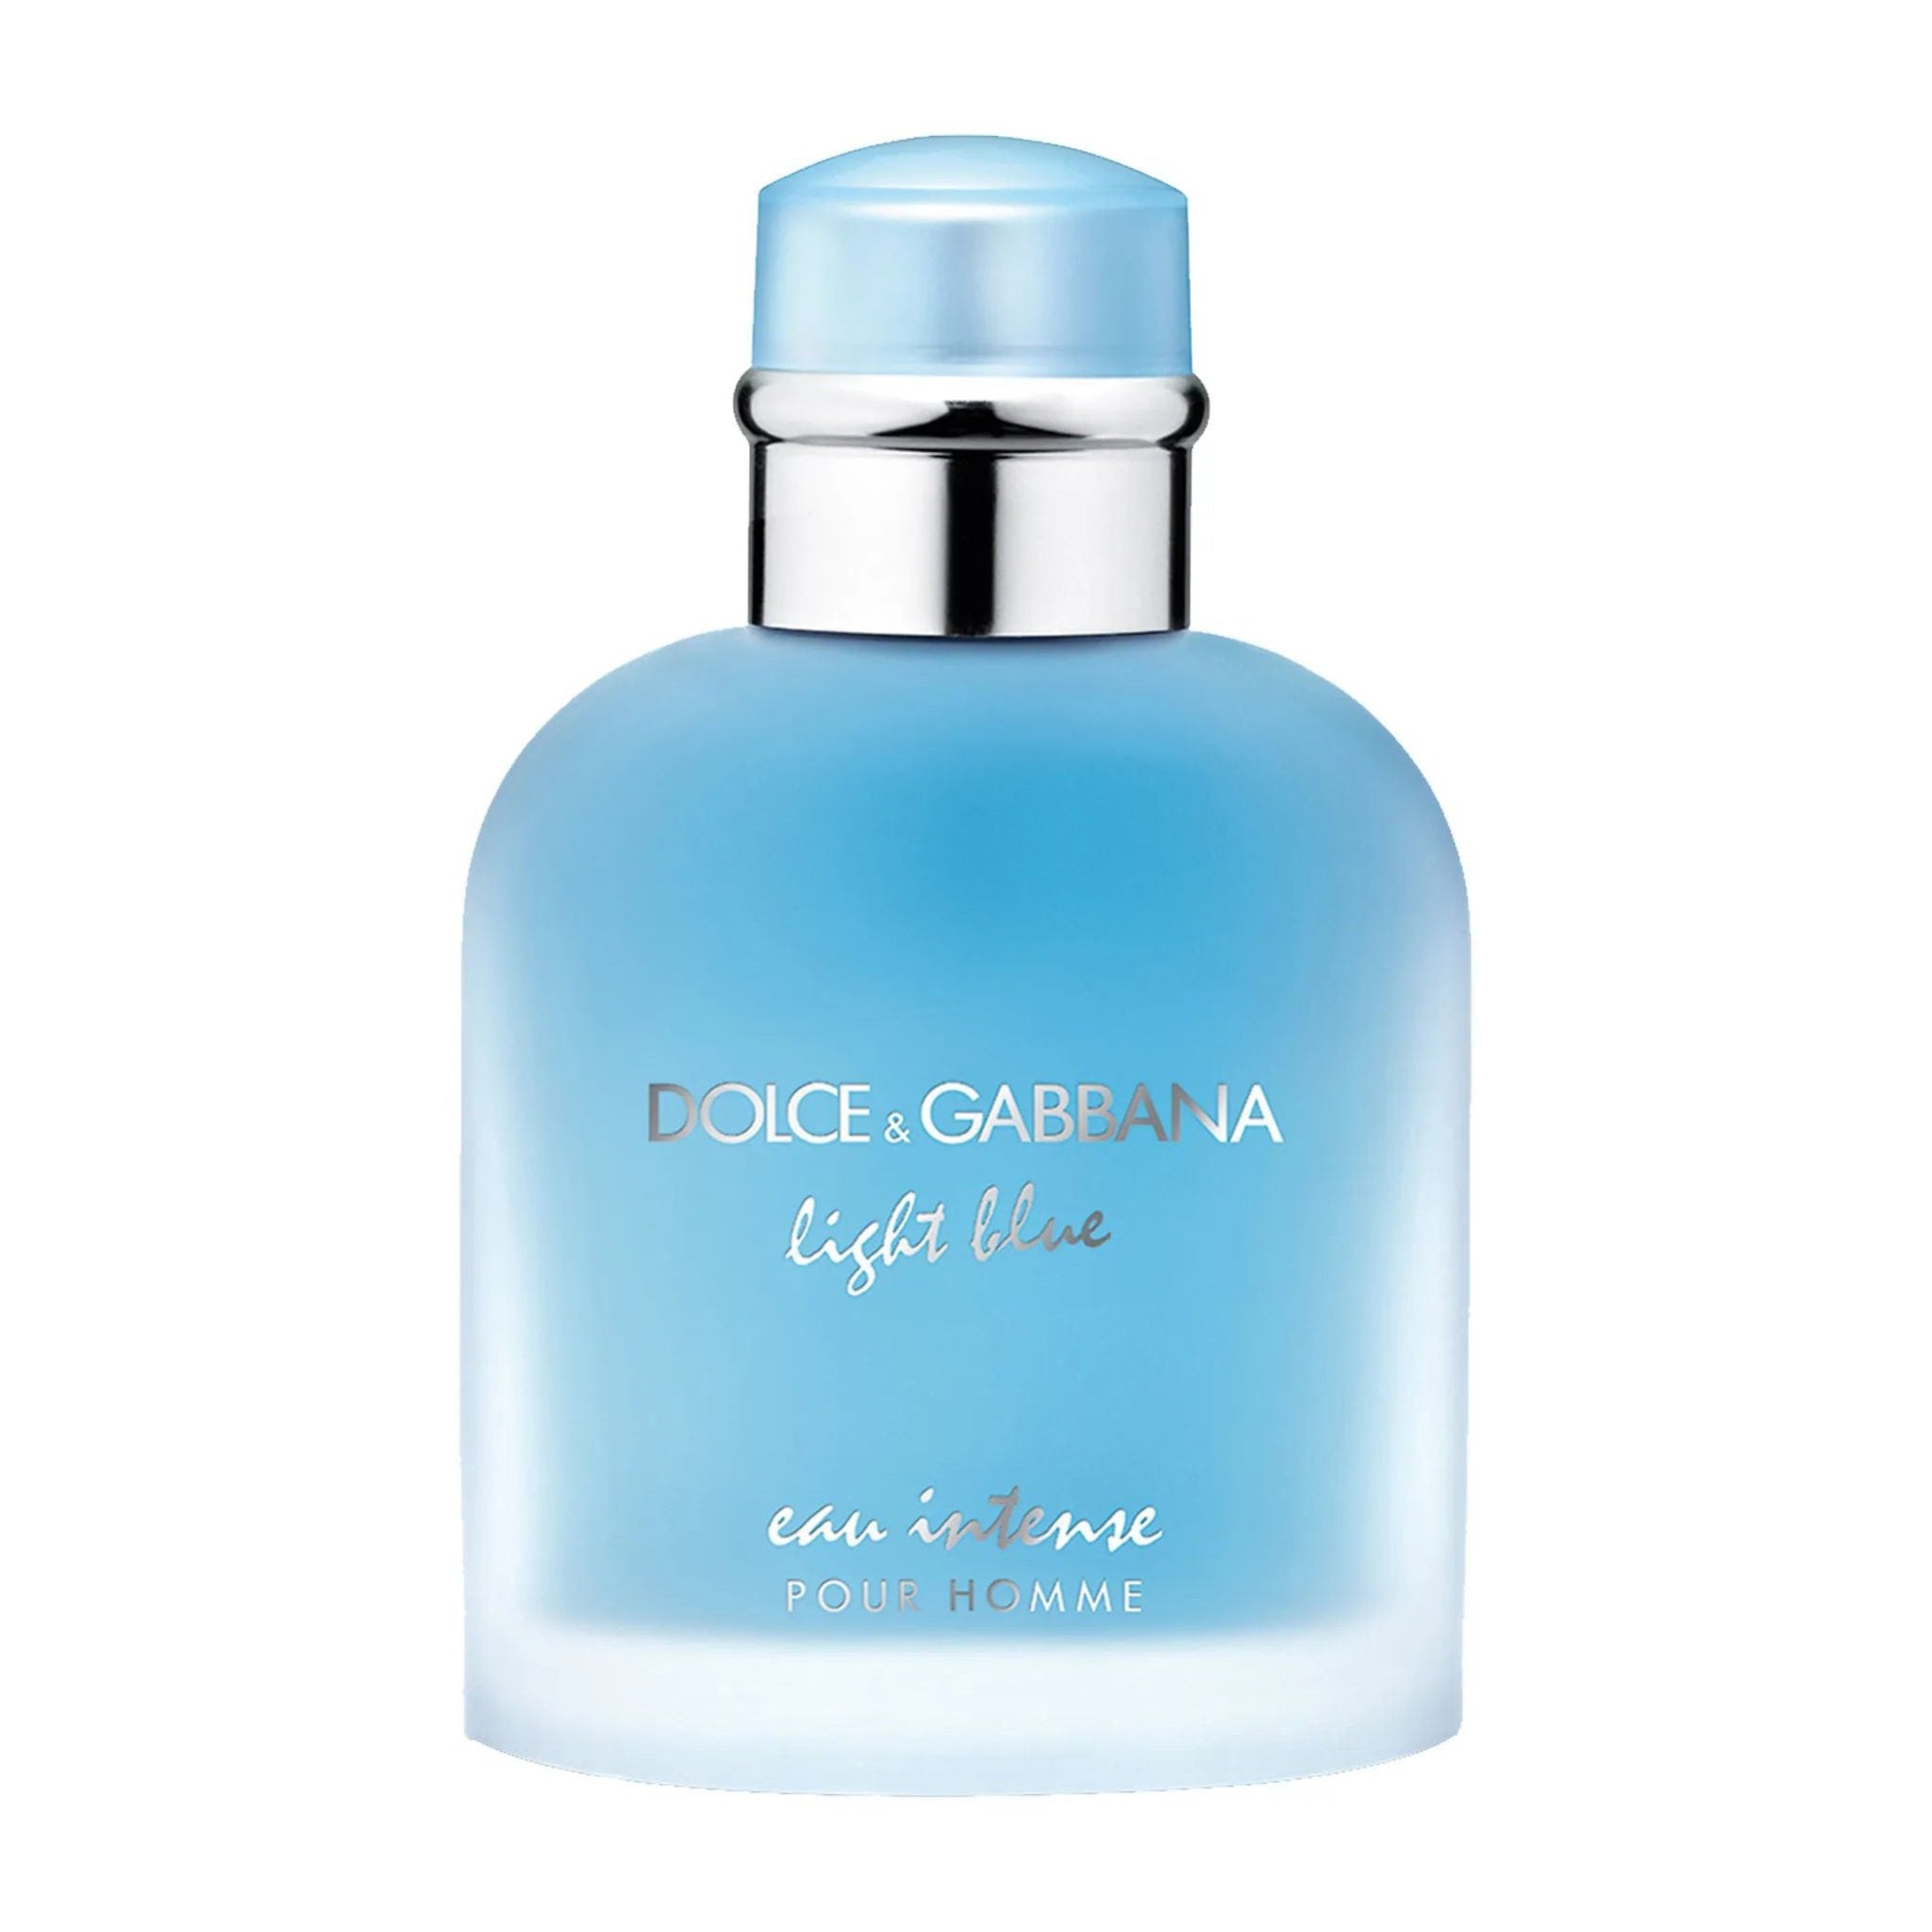 Dolce & Gabbana Light Blue EDP Intense For Men – 100ml - Bloom Pharmacy